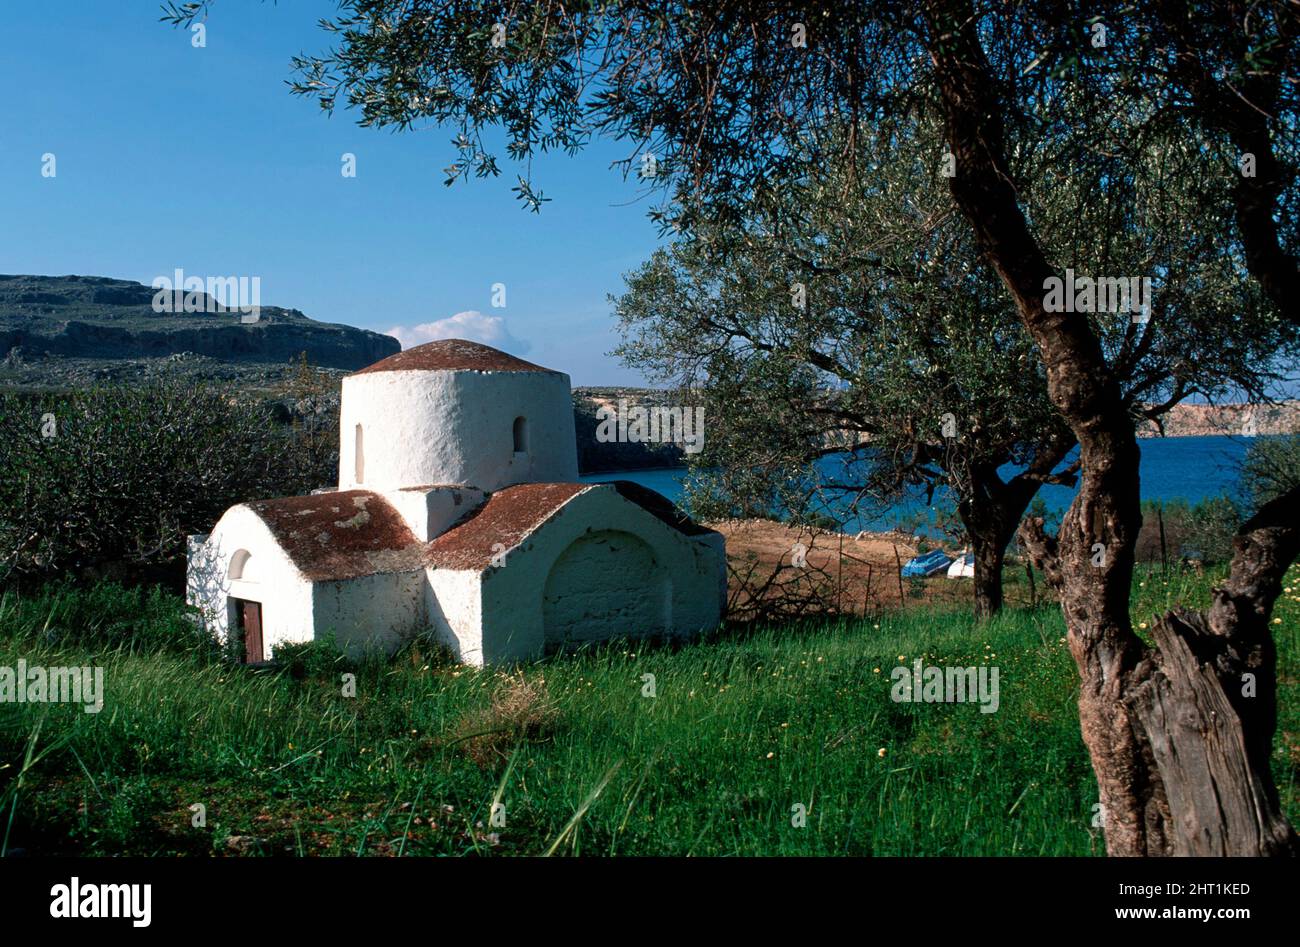 GRIECHENLAND, Insel Rhodos, Kleine Kapelle in der Bucht von Lindos Stock Photo